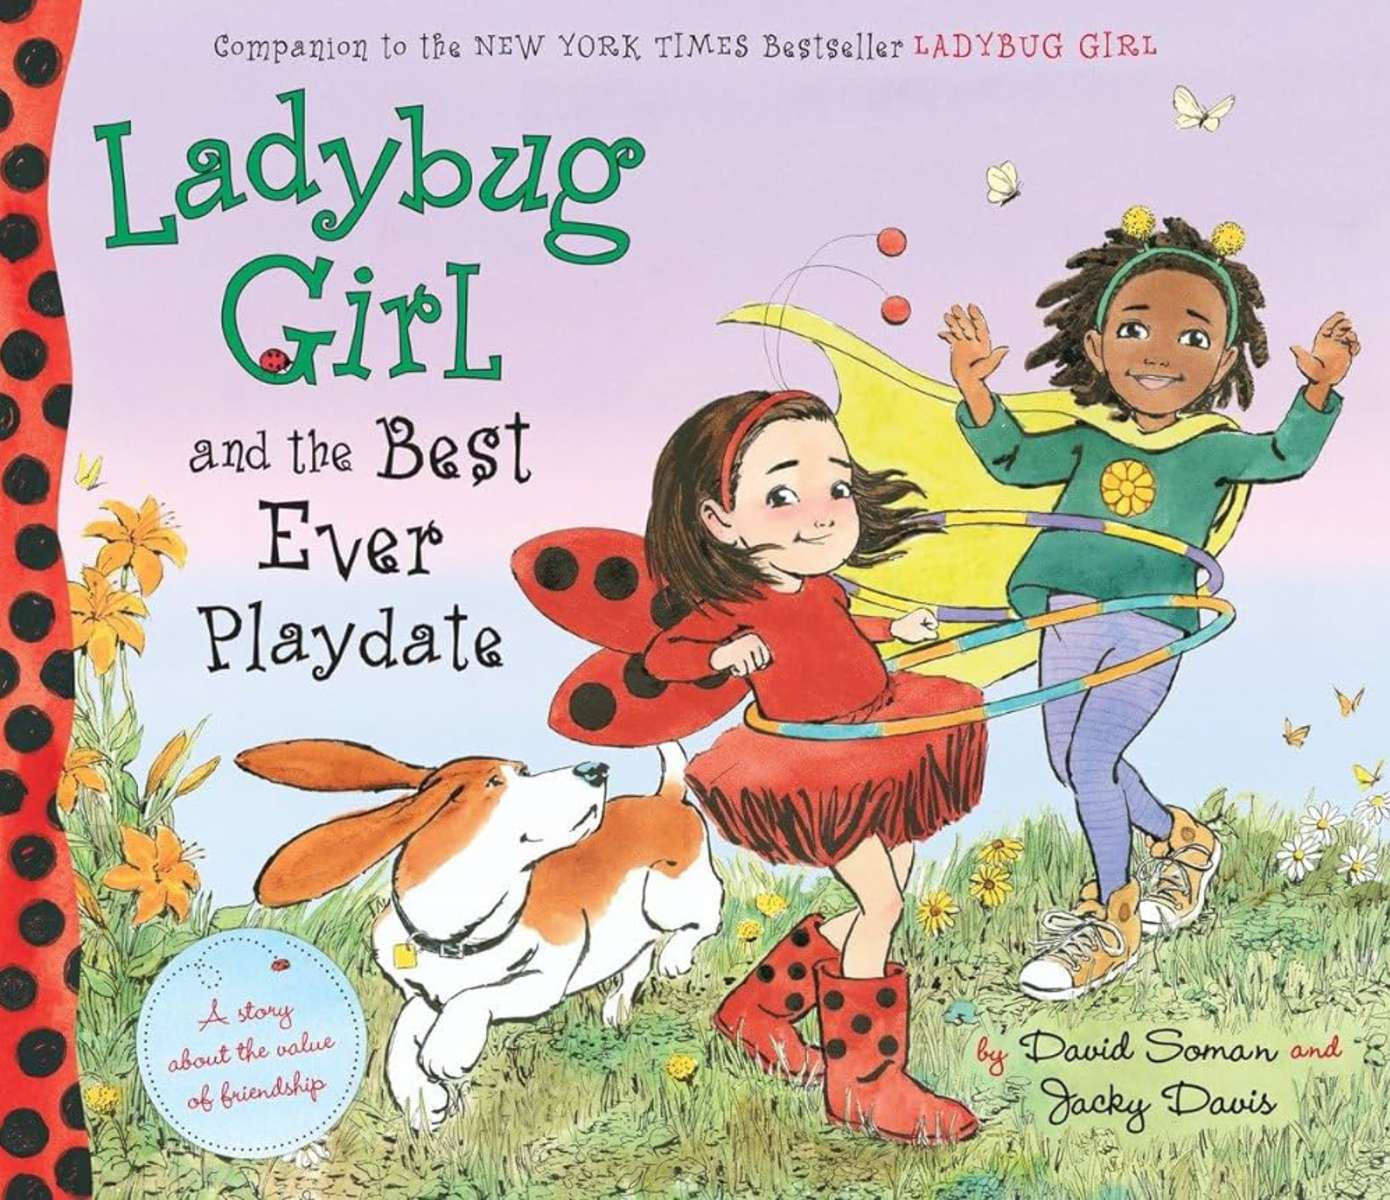 Ladybug Girl und das beste Playdate aller Zeiten Online-Puzzle